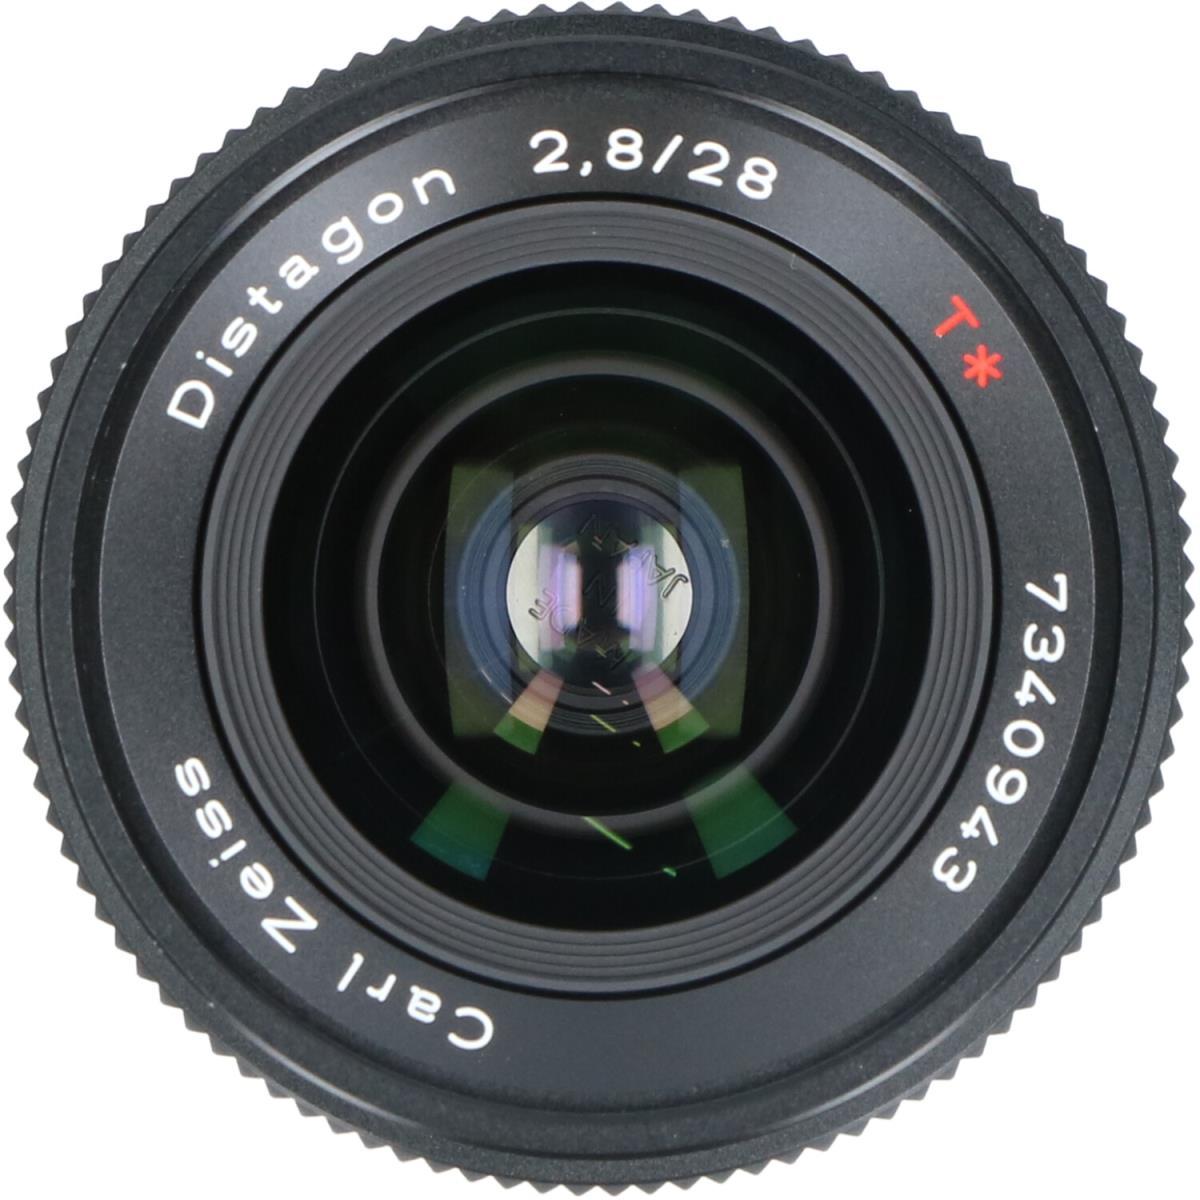 CONTAX DISTAGON 28mm F2.8MM (J)